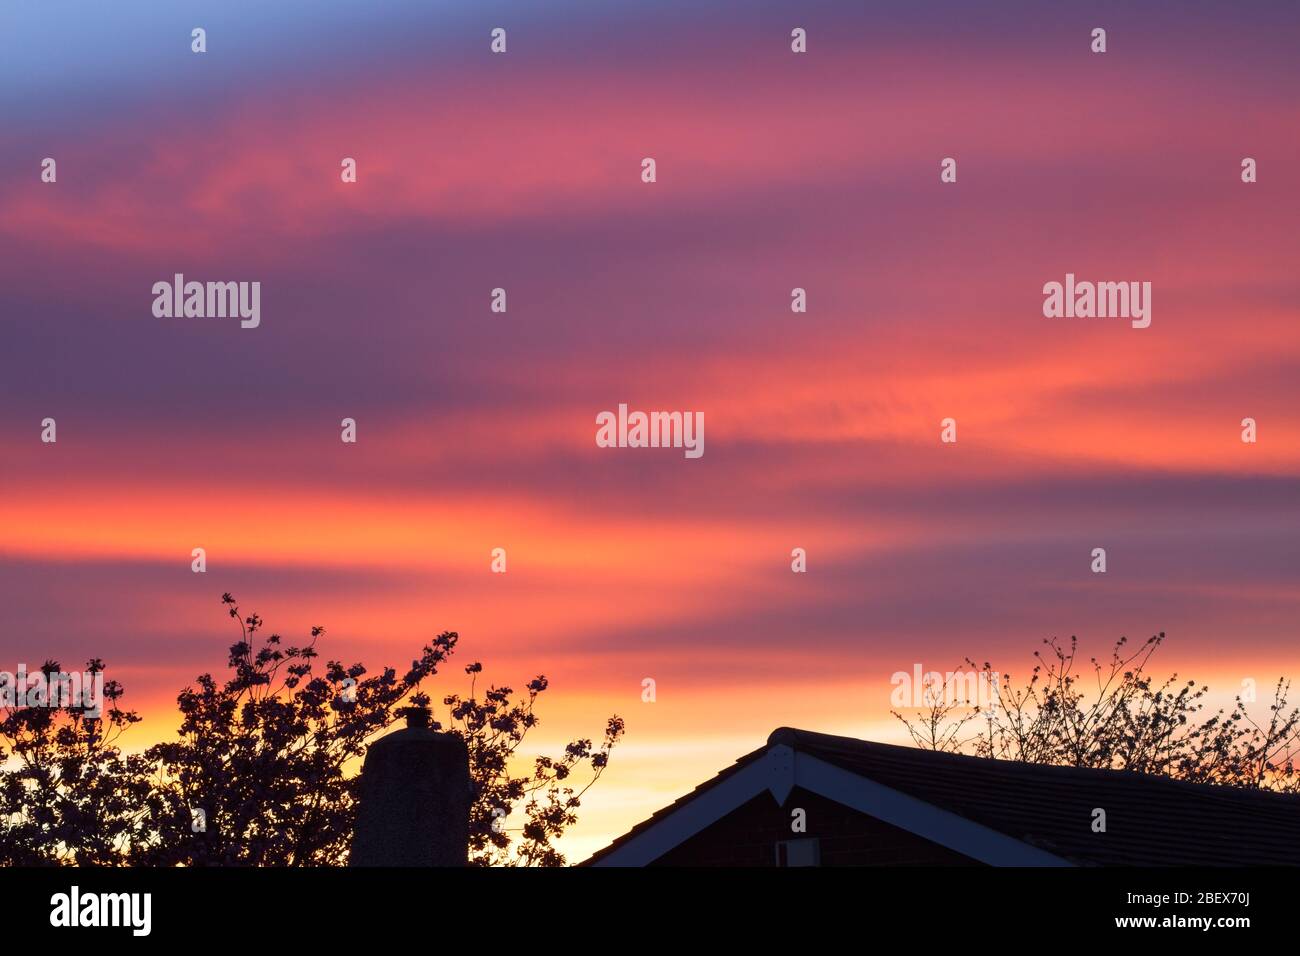 Un coucher de soleil printanier en avril avec des tons d'orange, de violet, de bleu et de gris avec la silhouette d'un toit et des branches d'arbres au premier plan. Banque D'Images